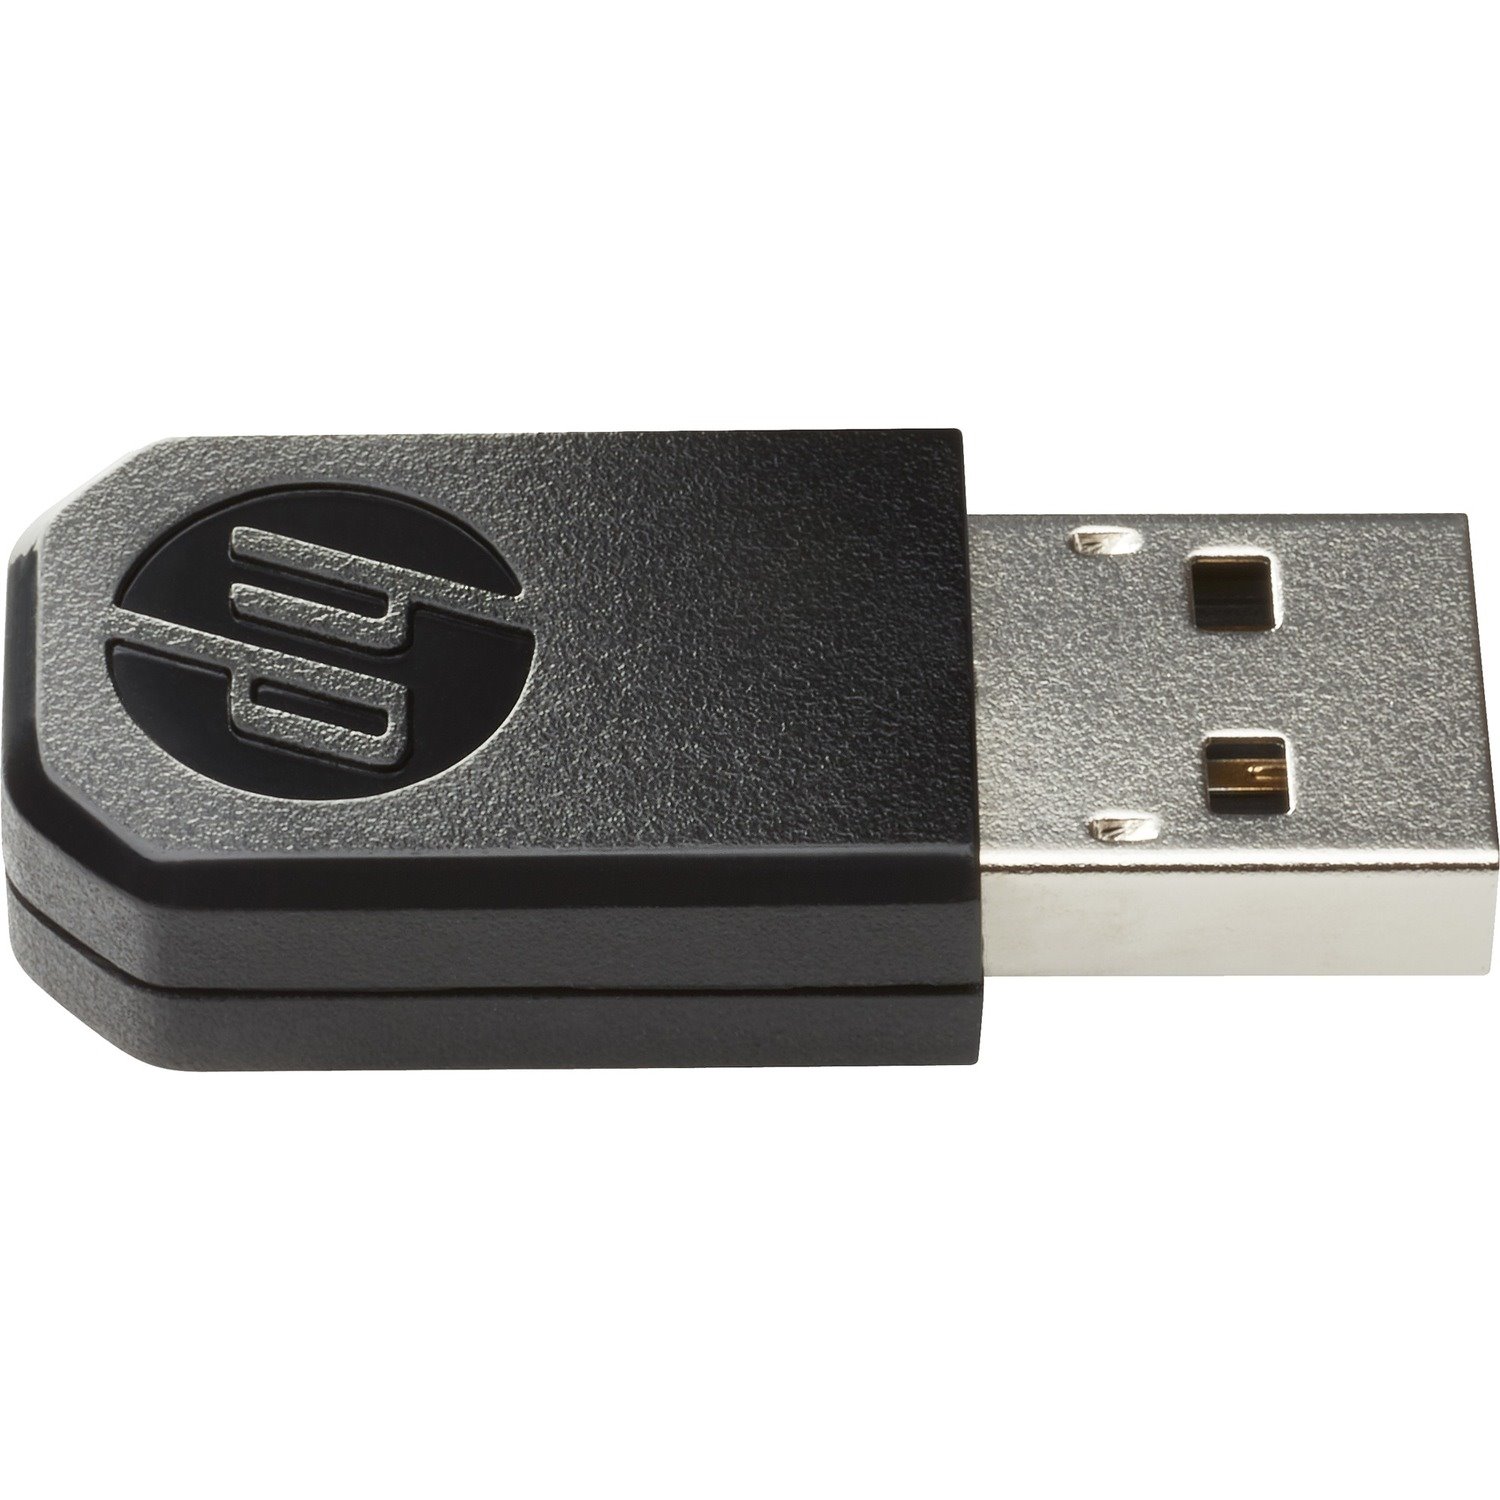 HPE USB Token